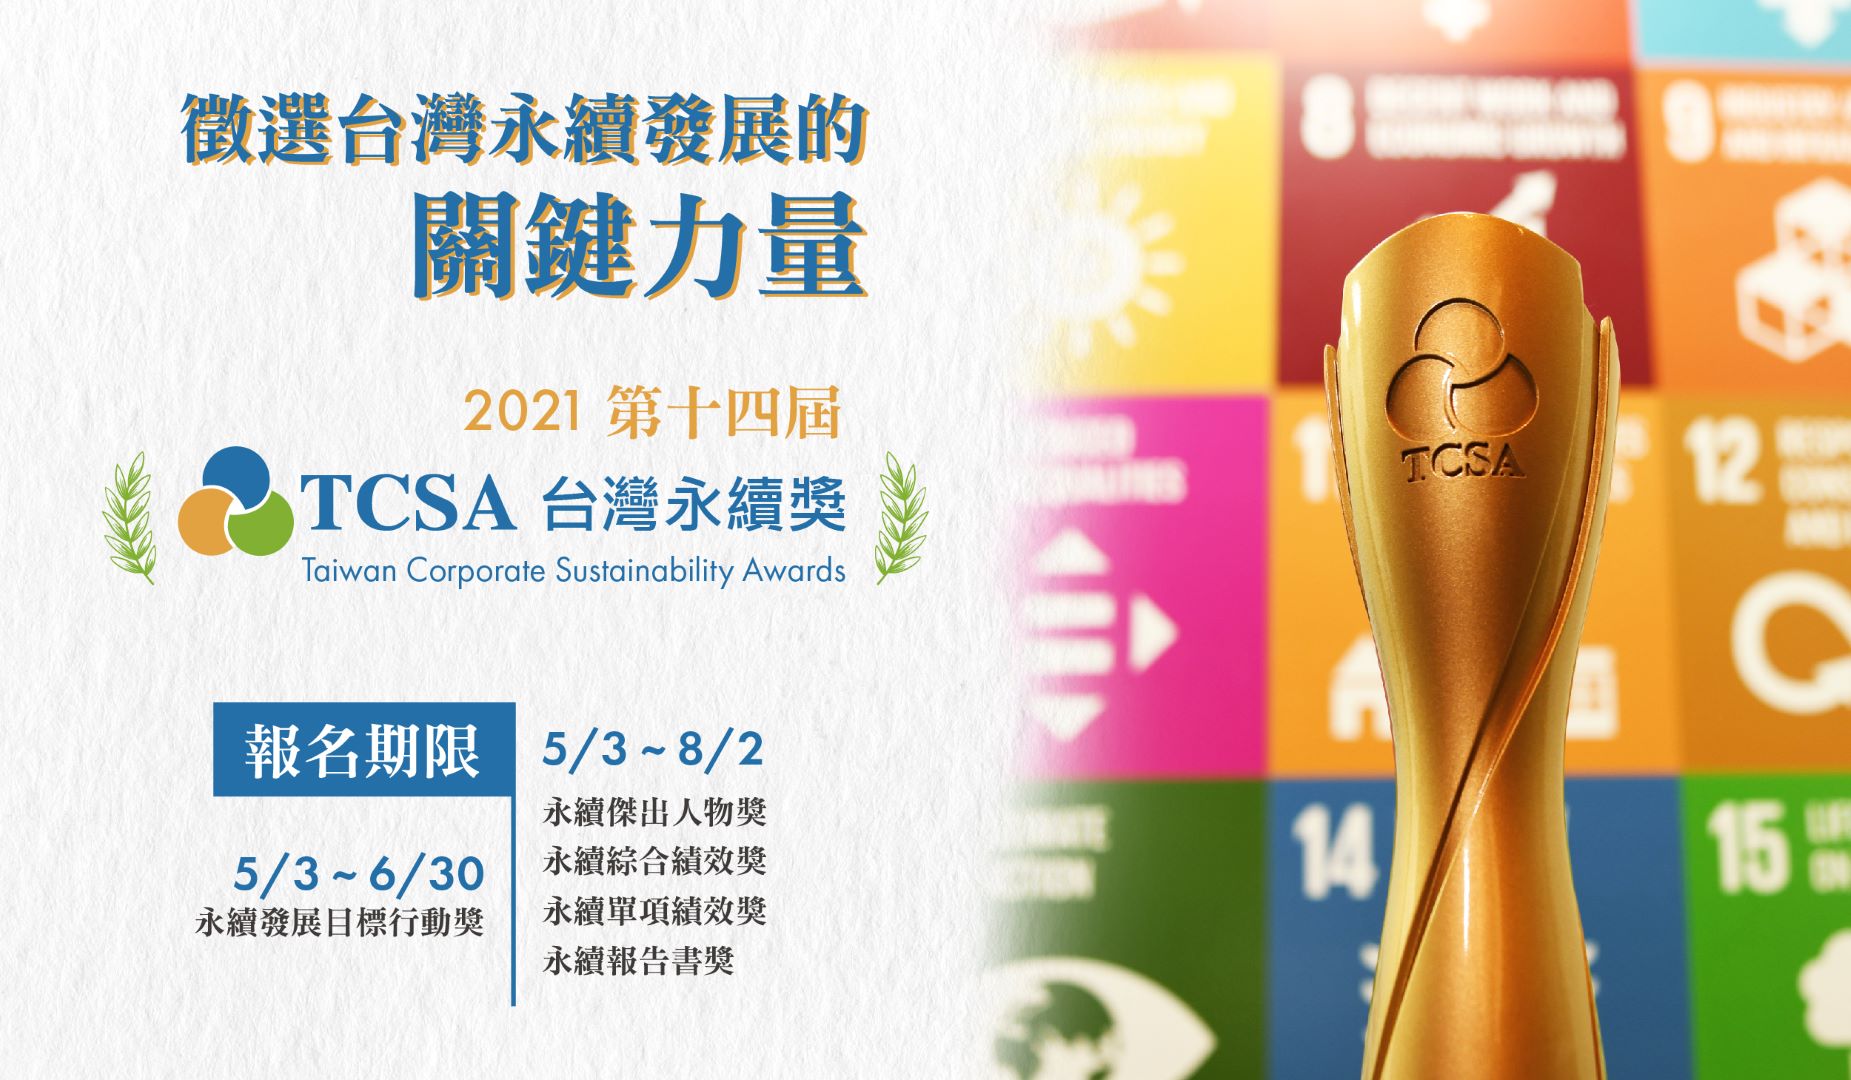 2021第14屆 TCSA台灣永續獎報名簡章公告